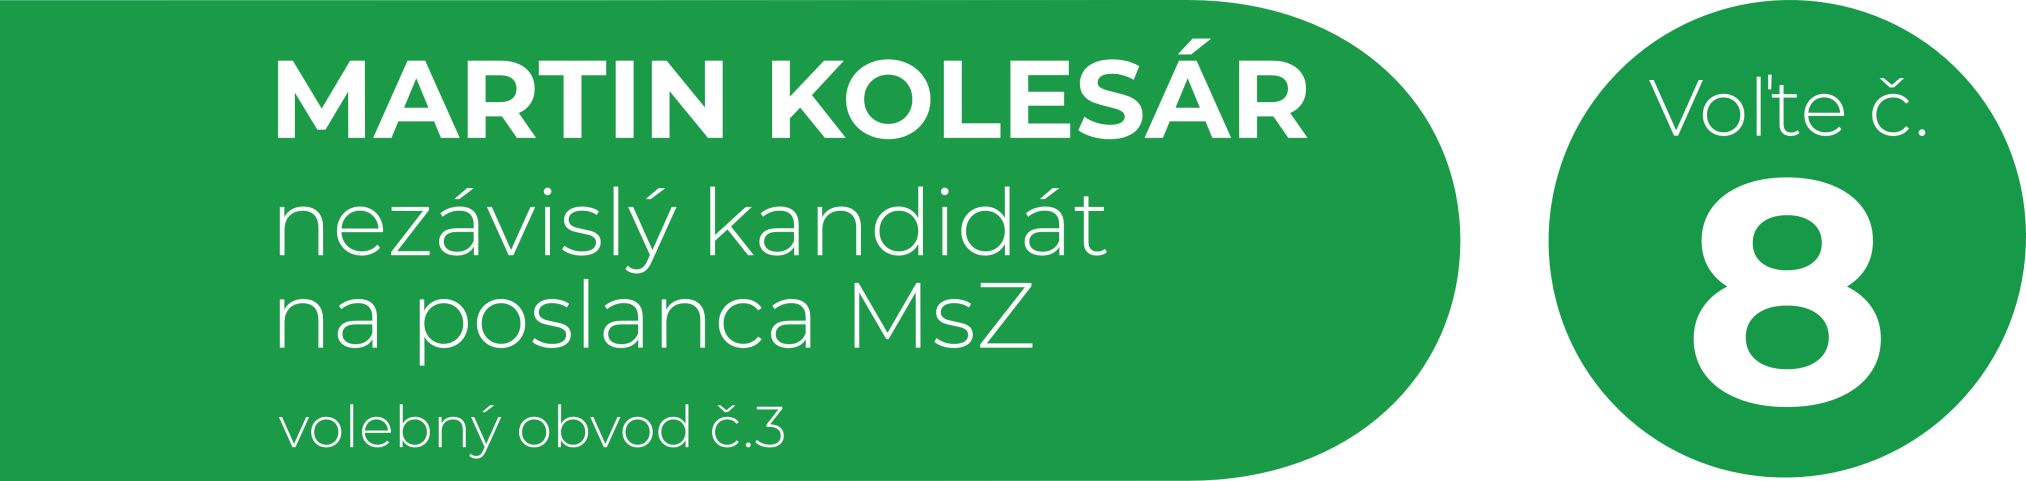 Martin Kolesár nezávislý kandidát na poslanca MsZ Novém mesto nad Váhom